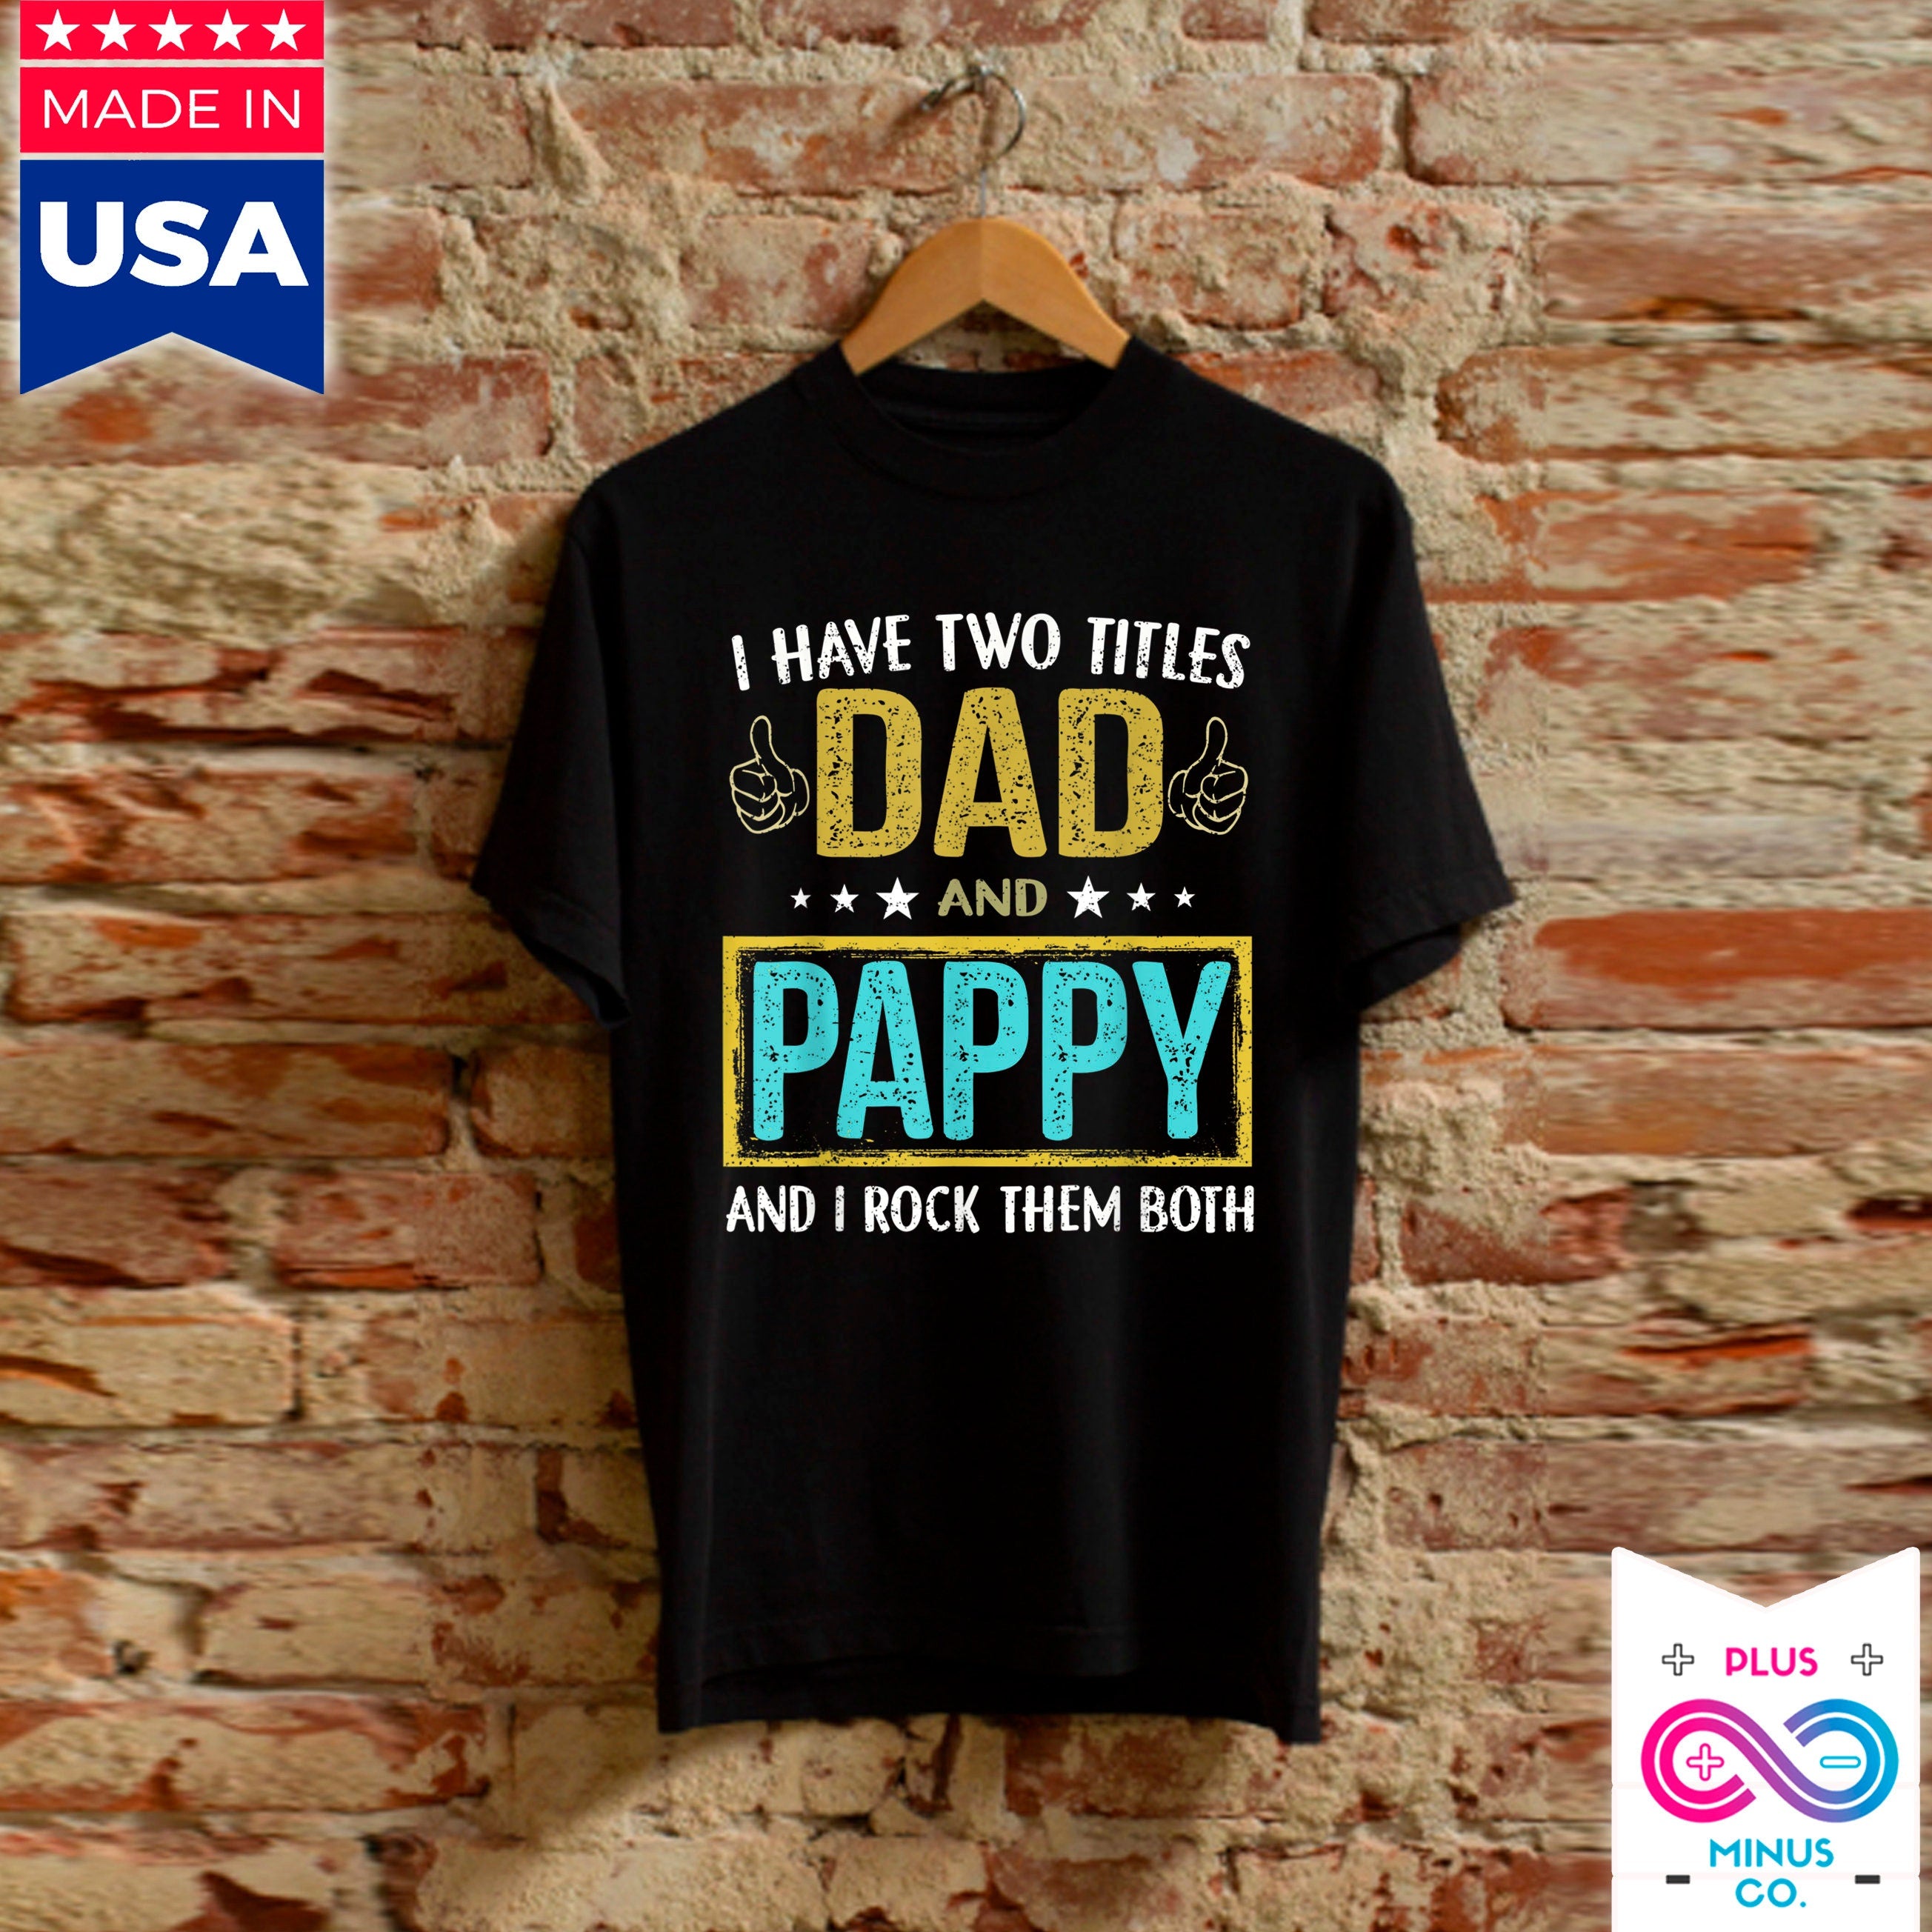 Men'S I Have Two Titles Dad And Pappy - Gifts For Father T-shirts,gjafir frá dóttur til pabba, feðradagsgjöf, gjafir frá syni til pabba - plusminusco.com